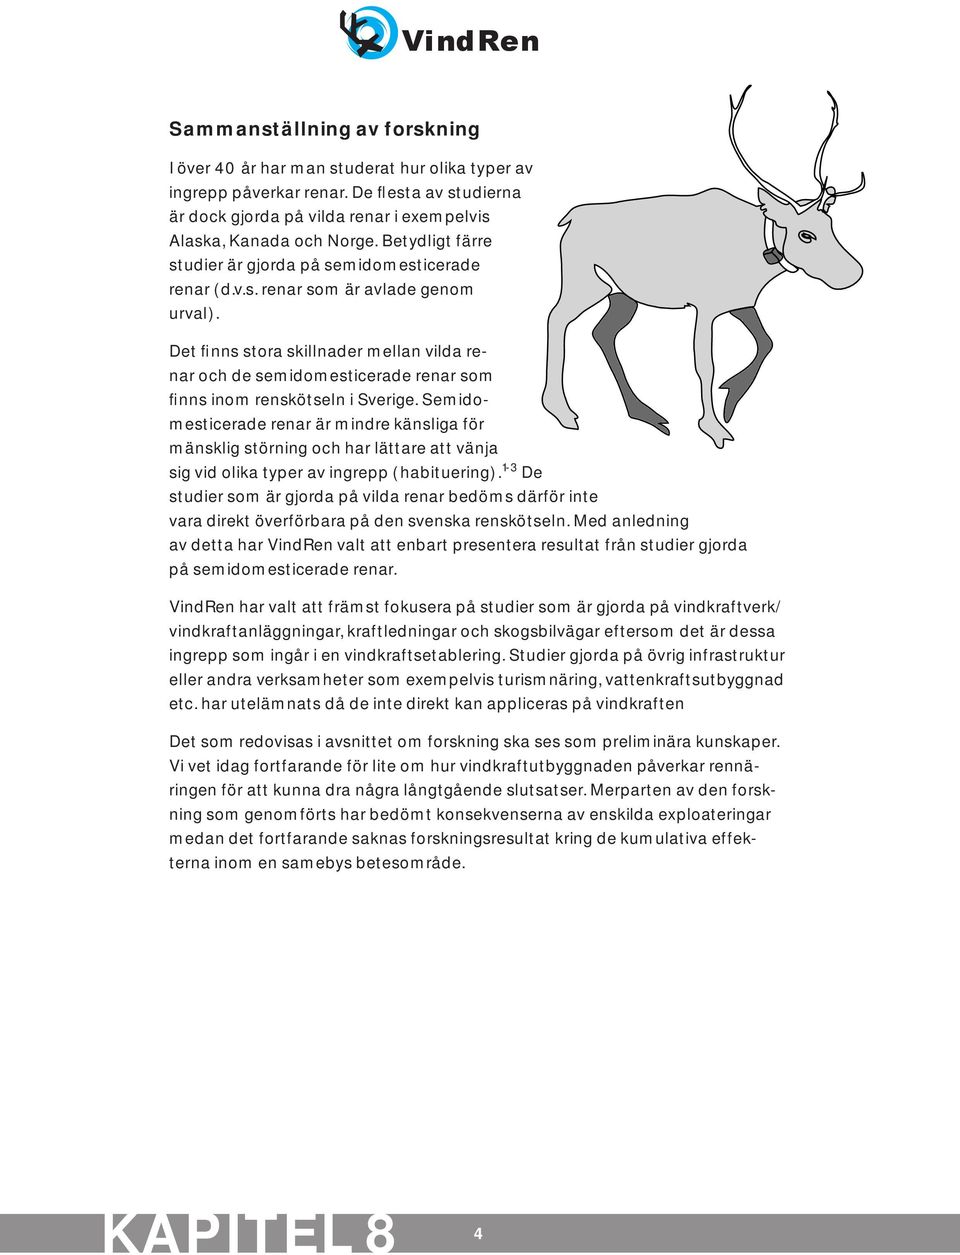 Det finns stora skillnader mellan vilda renar och de semidomesticerade renar som finns inom renskötseln i Sverige.